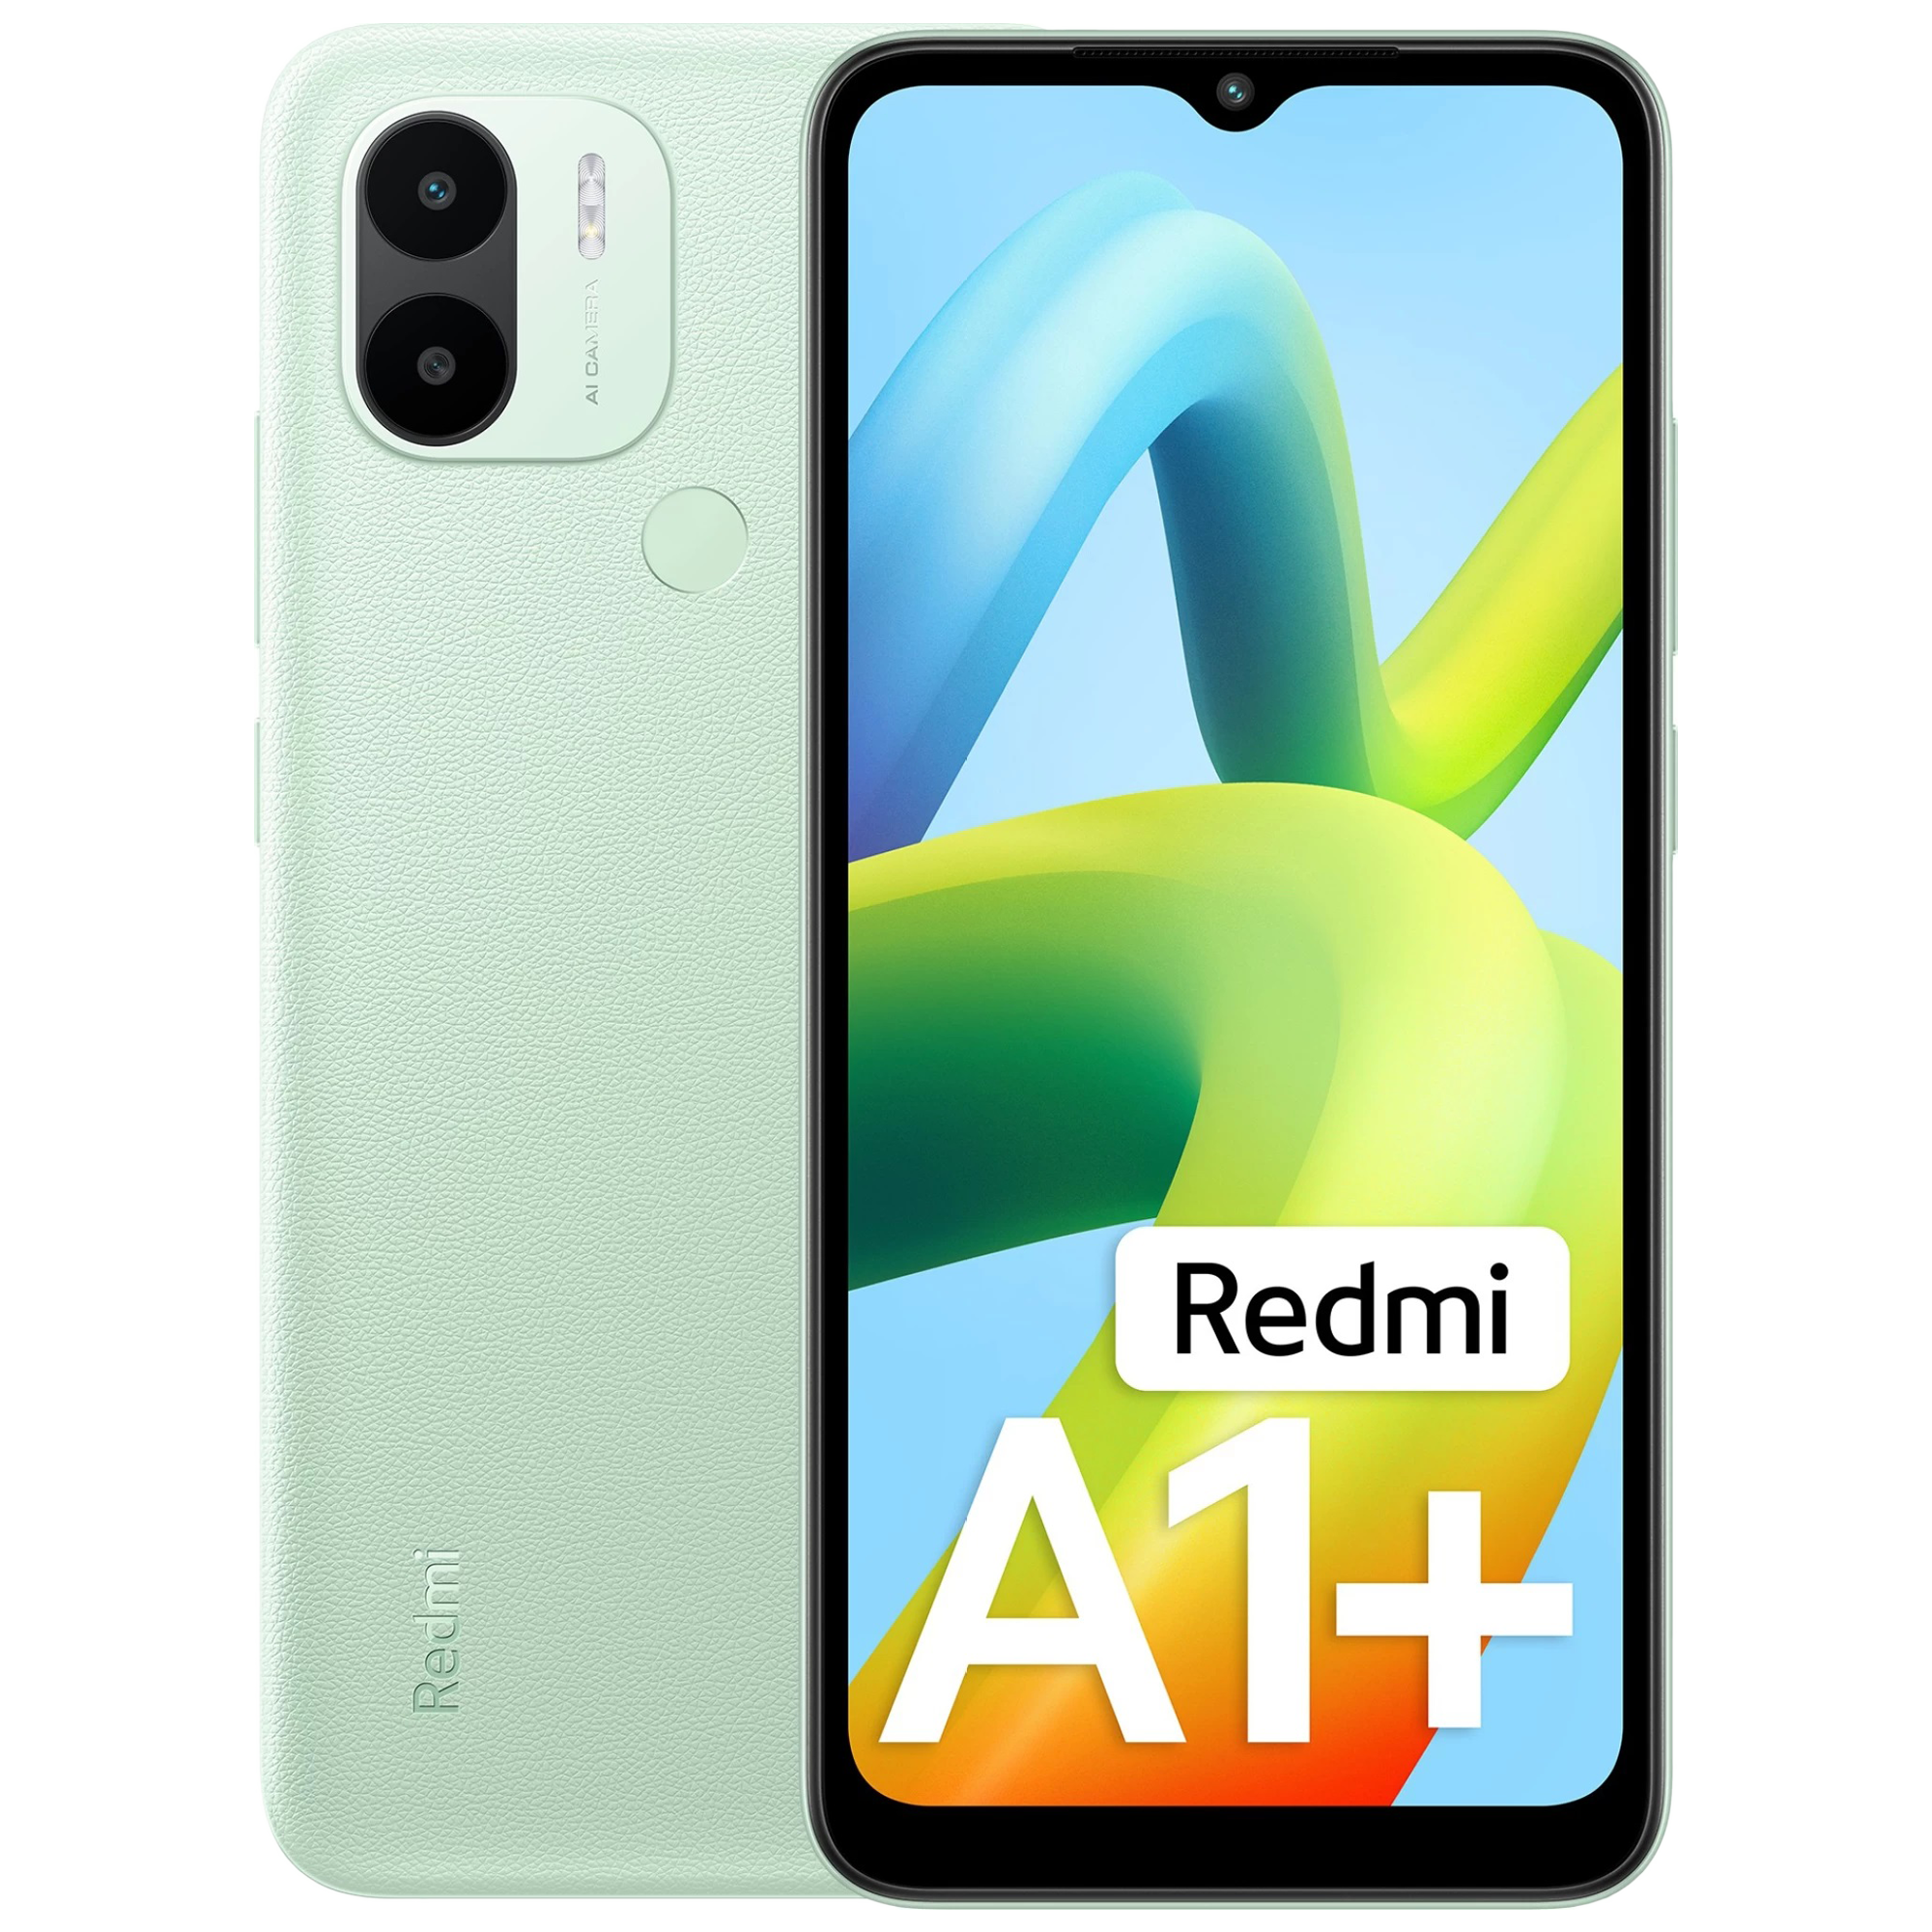 Redmi A1+ (2GB RAM, 32GB, Light Green)